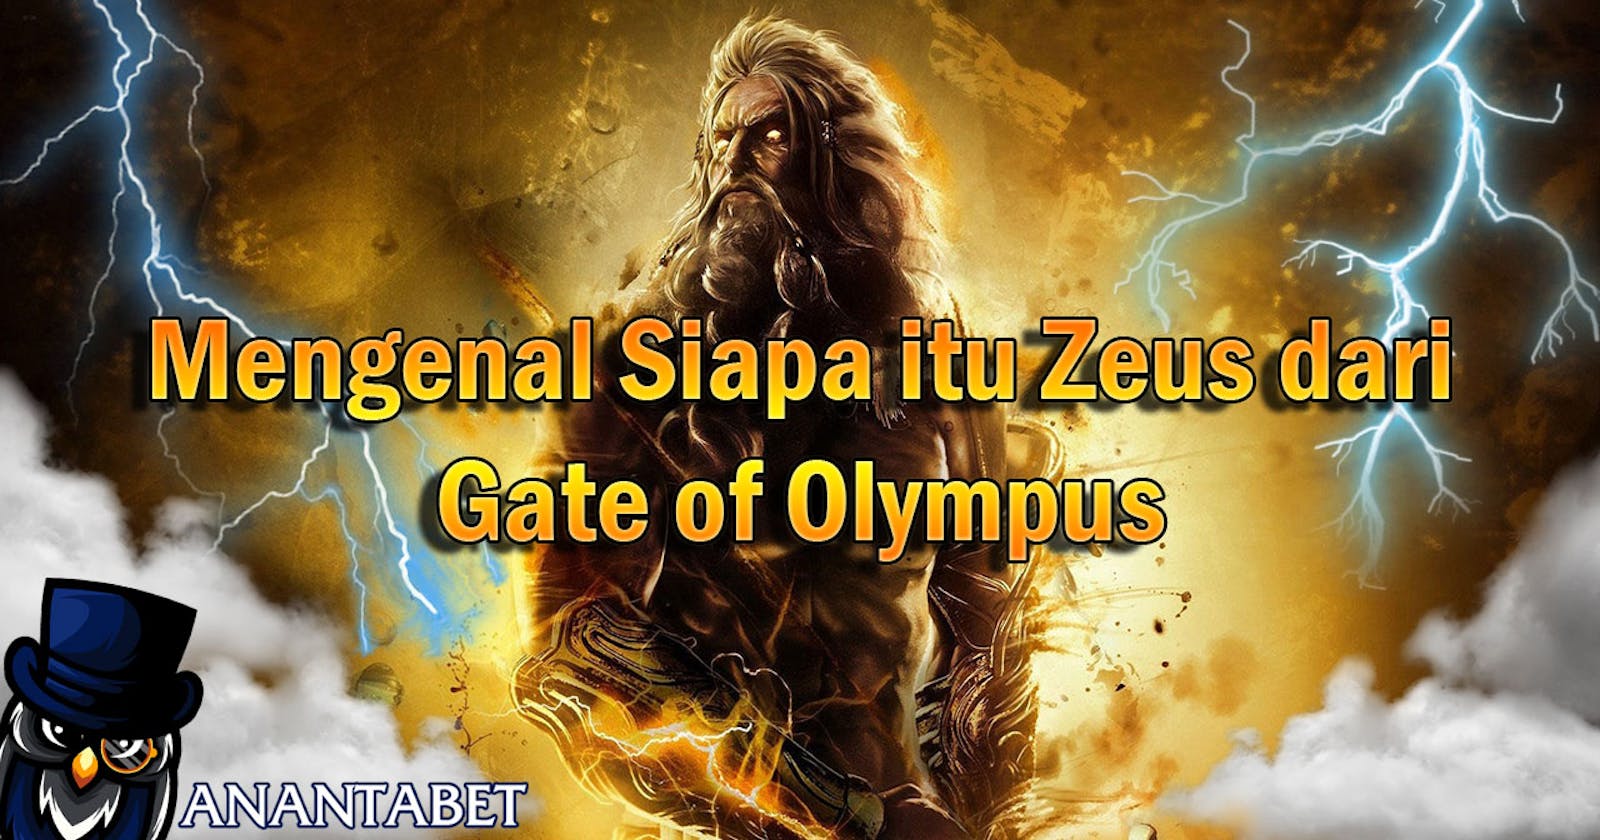 Mengenal Siapa itu Zeus dari Gate of Olympus?